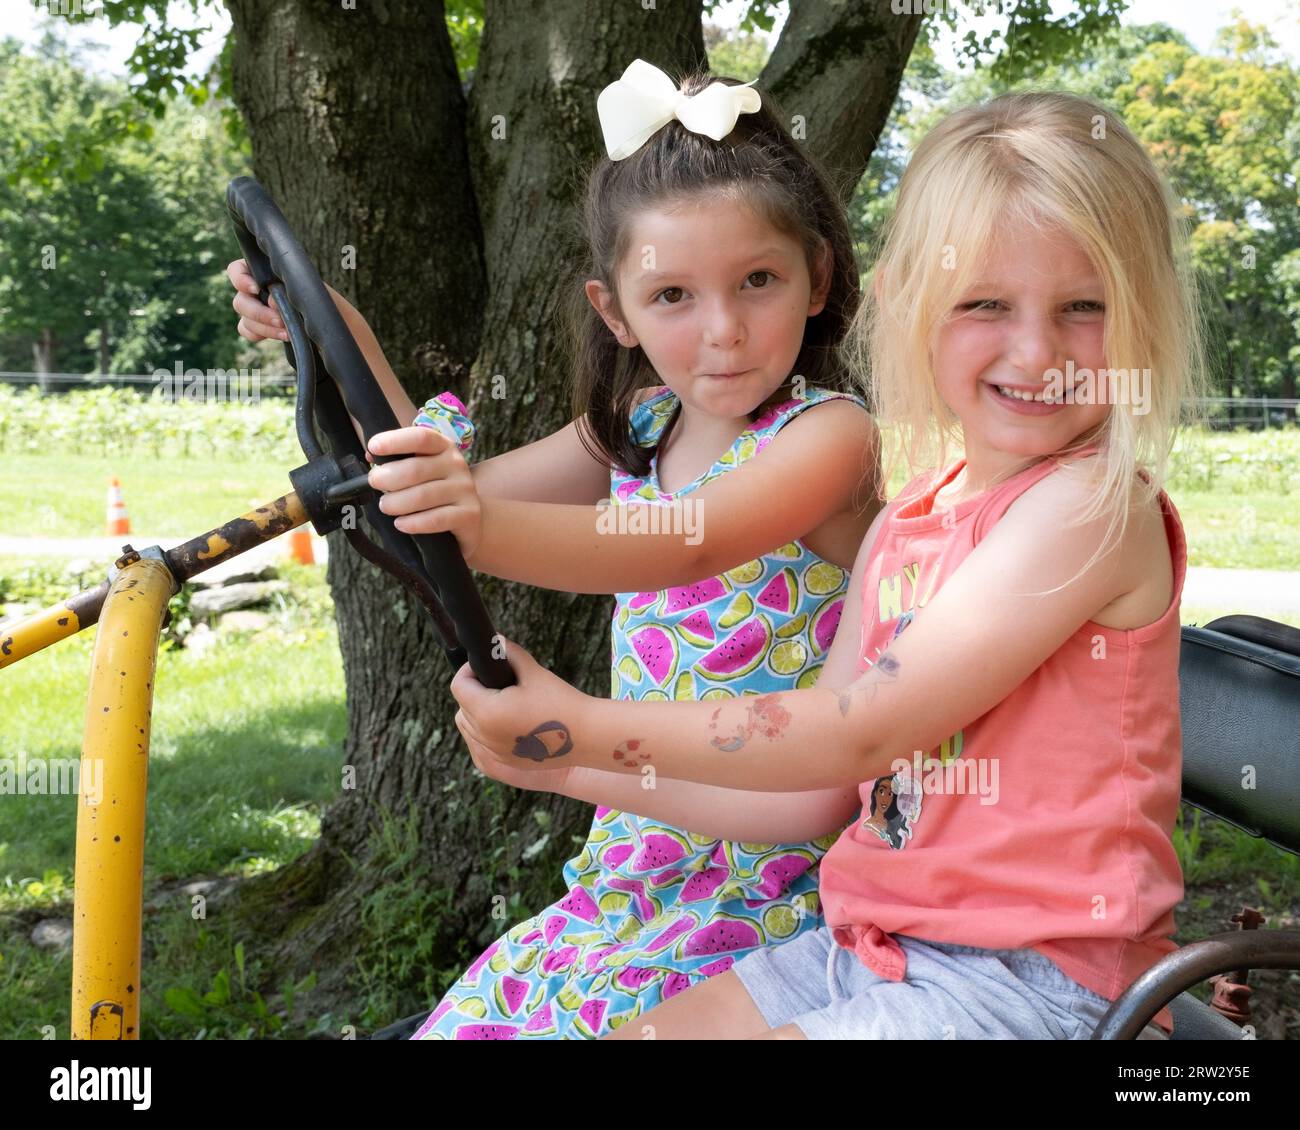 Deux filles s'amusant assis sur un tracteur de ferme Banque D'Images